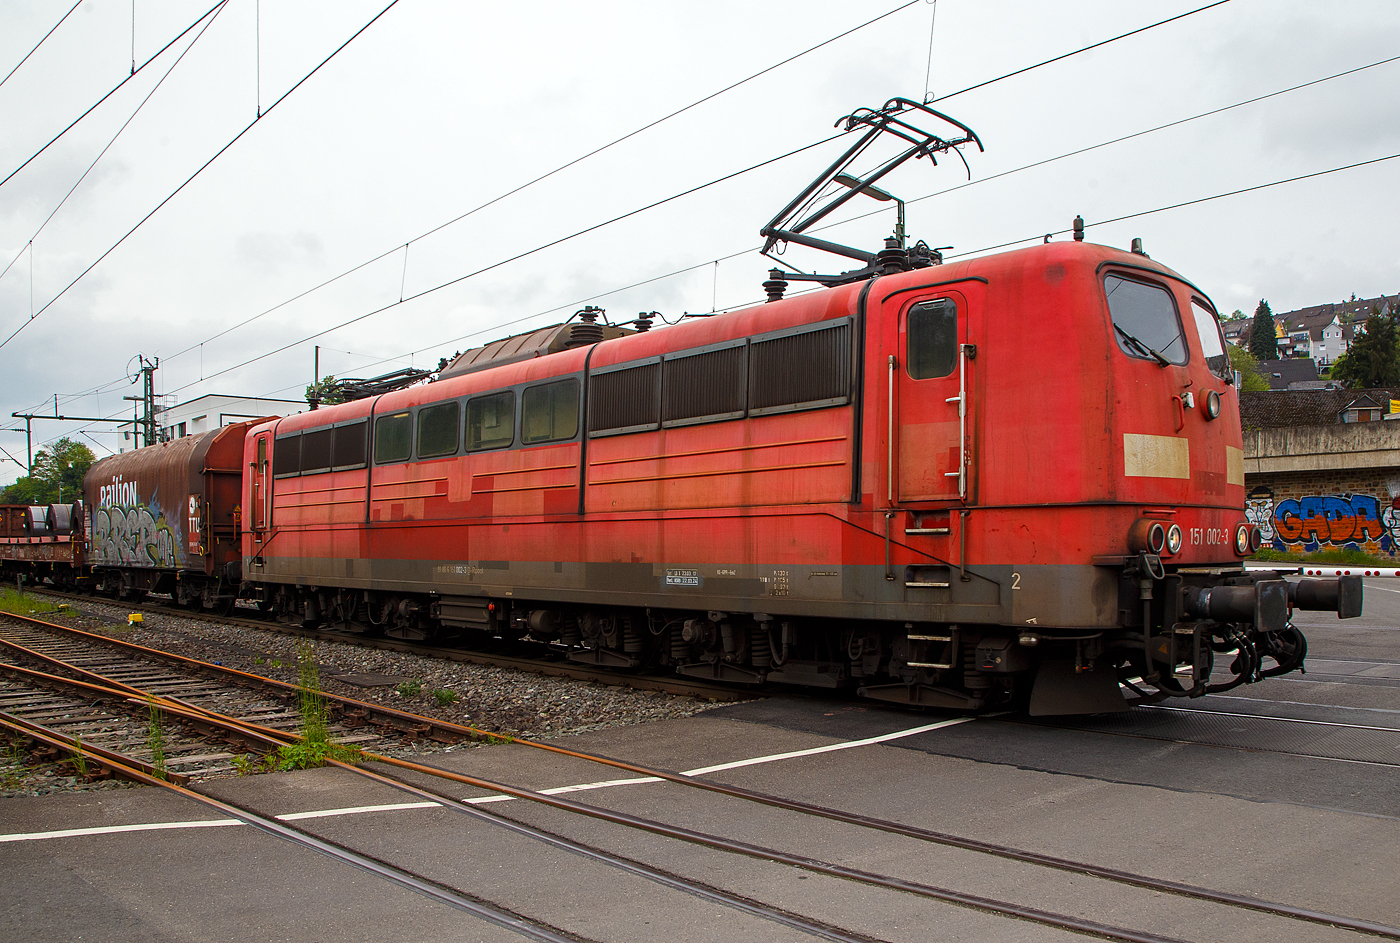 Die an die DB Cargo AG vermietete Railpool 151 002-3 (91 80 6151 002-3 D- Rpool) fhrt mit einem gemischten Gterzug am 11.05.2023 durch Niederschelden (hier beim B 343 – km 112,183 der Siegstrecke) in Richtung Siegen.

Die Lok wurde 1973 von Krupp in Essen unter der Fabriknummer 5174, der elektrische Teil ist von AEG unter Fabriknummer 8820, gebaut, und an die Deutsche Bundesbahn geliefert. Bis zum 31.12.2016 gehrte sie zur DB Cargo AG. Zum 01.01.2017 wurden je 100 sechsachsige elektrische Altbau-Lokomotiven der Baureihen 151 und 155 an ein Konsortium aus dem Lokvermieter Railpool verkauft. Die DB Cargo mietet daraufhin 100 Loks von Railpool wieder an. Die anderen Maschinen werden dem freien Markt angeboten.

Diese sechsachsigen Loks (Co’Co’) sind immer noch starke Zugpferde, und so manche moderne Lok hat nicht diese Leistungsfhigkeit. Mit einer Stundenleistung von 6.288 kW (8.550 PS) bei 92 km/h und einer Anfahrzugkraft von 395 kN knnen diese Loks 3.000 t Zge bei 3 ‰ Steigung noch mit einer Dauergeschwindigkeit 75 km/h ziehen, bei 2.000 t Zgen sind es 100 km/h.